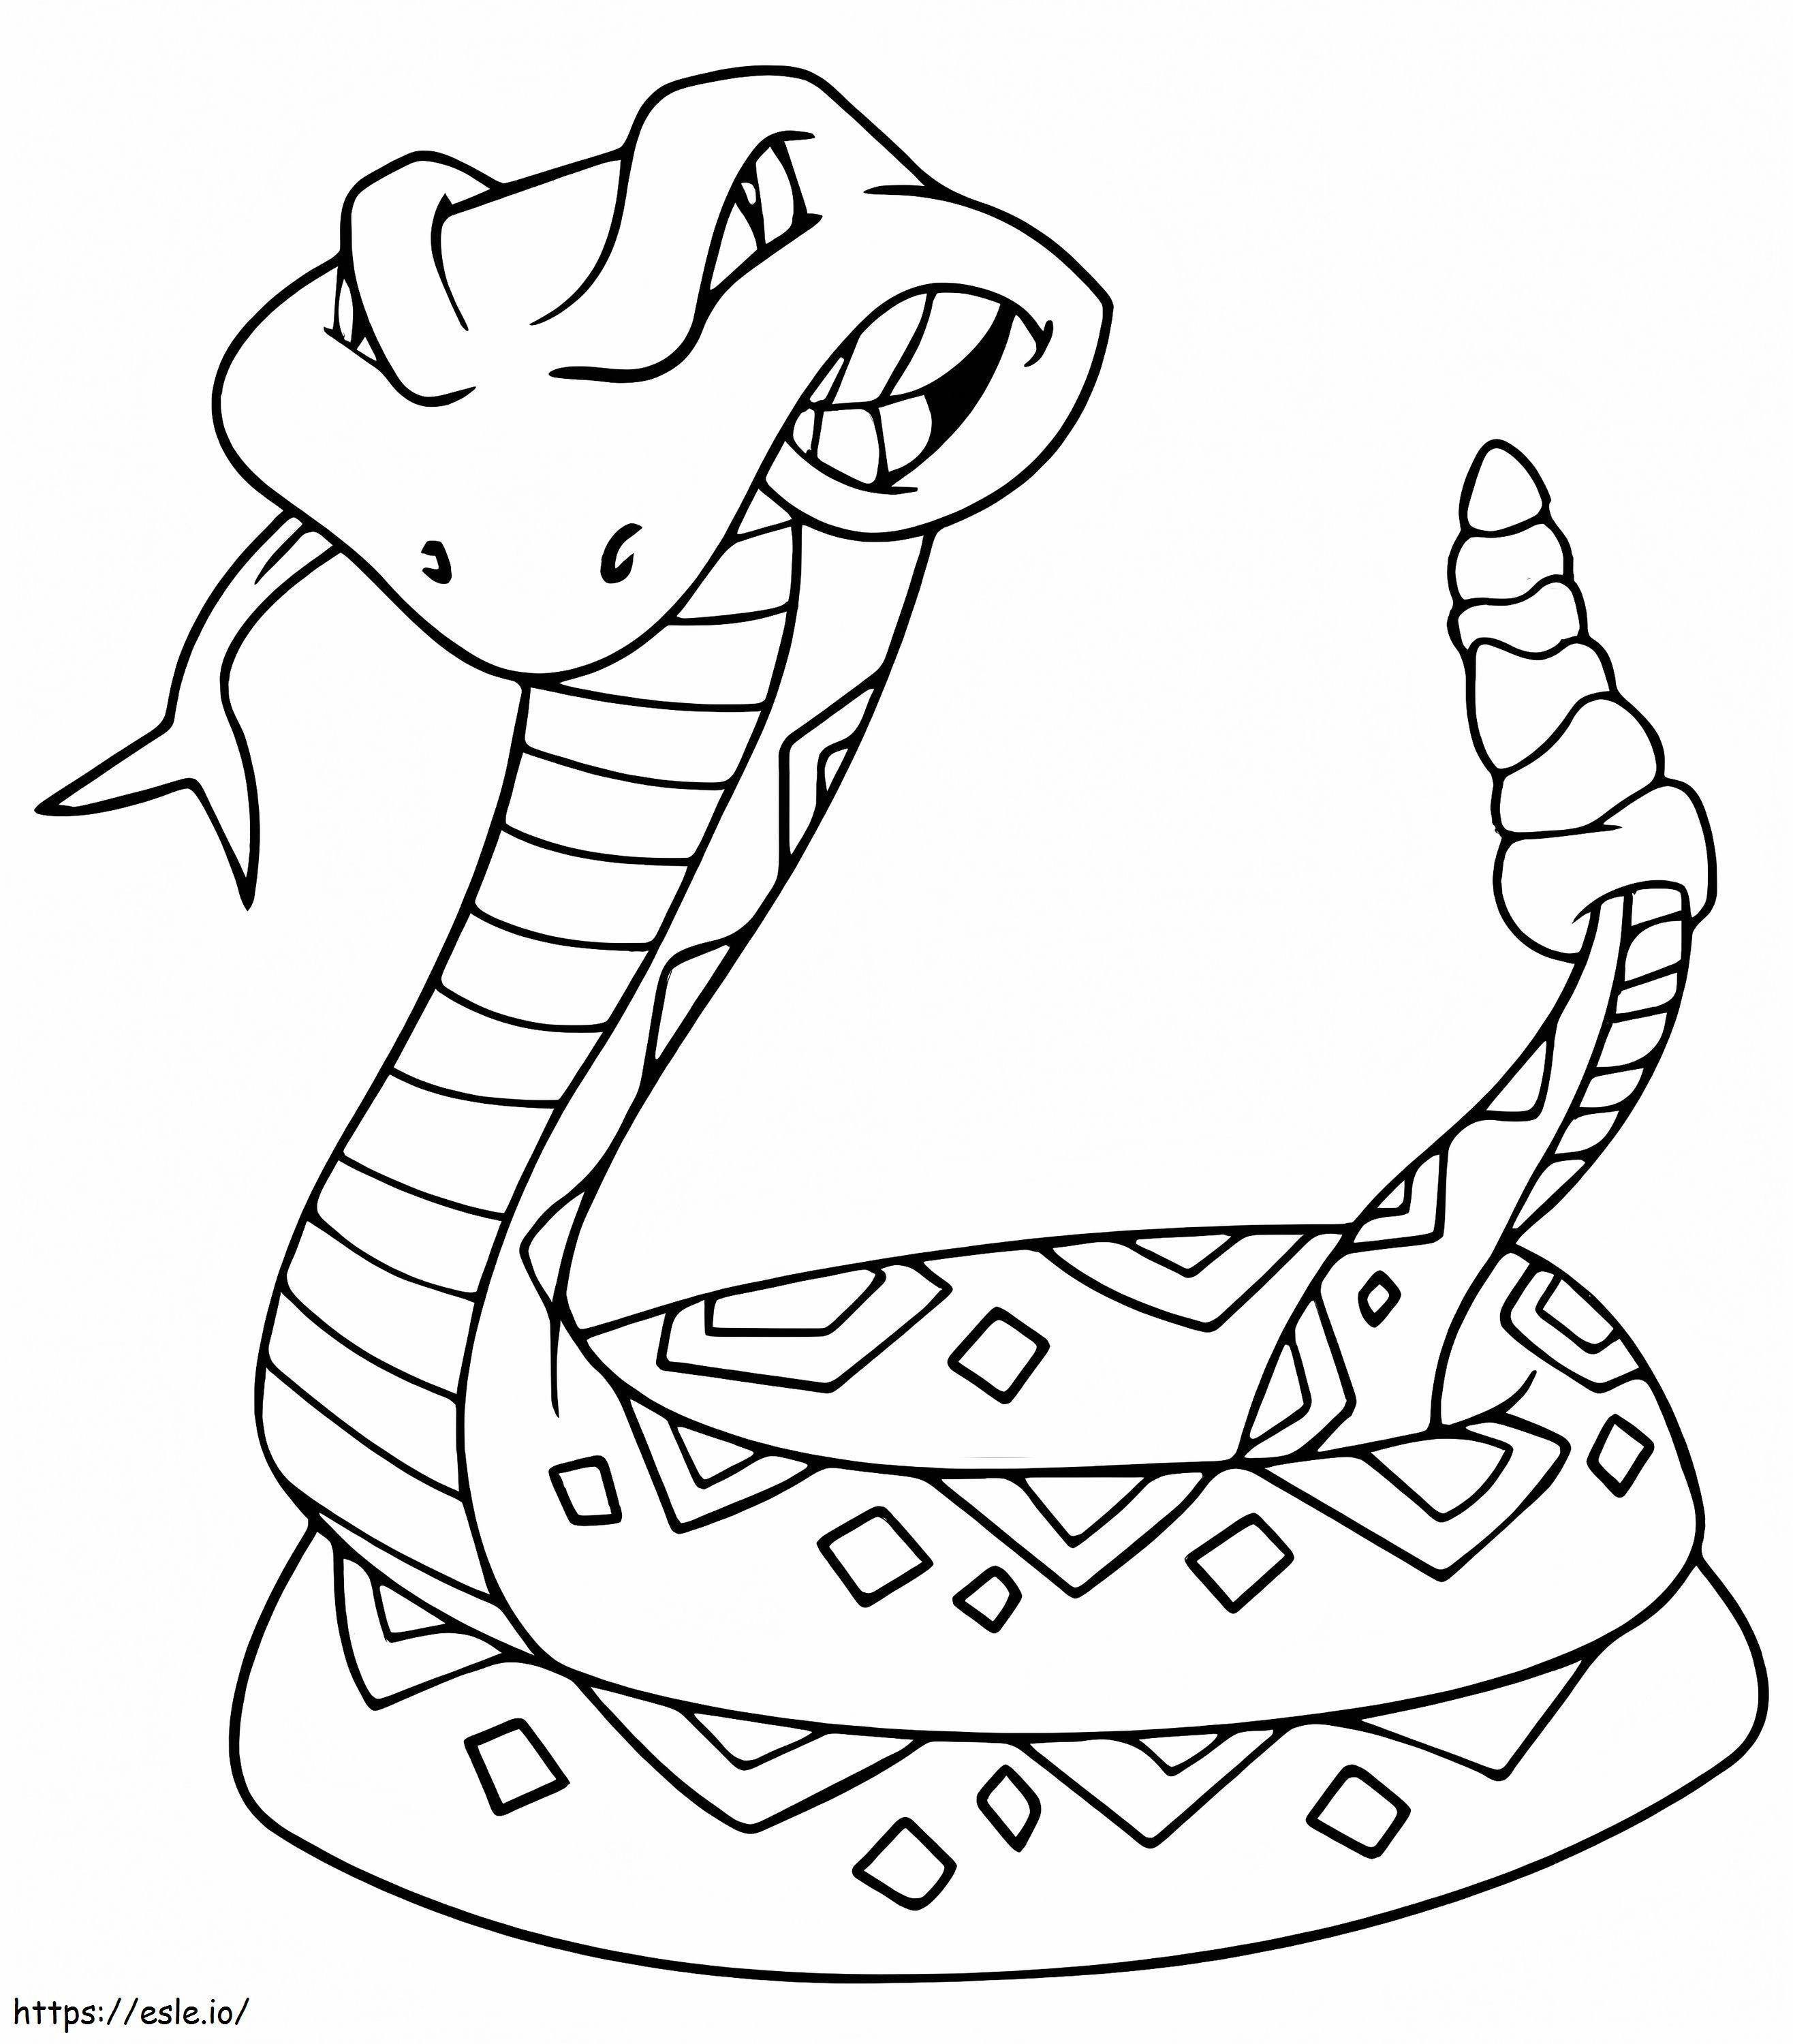 Cobra de desenho animado para colorir